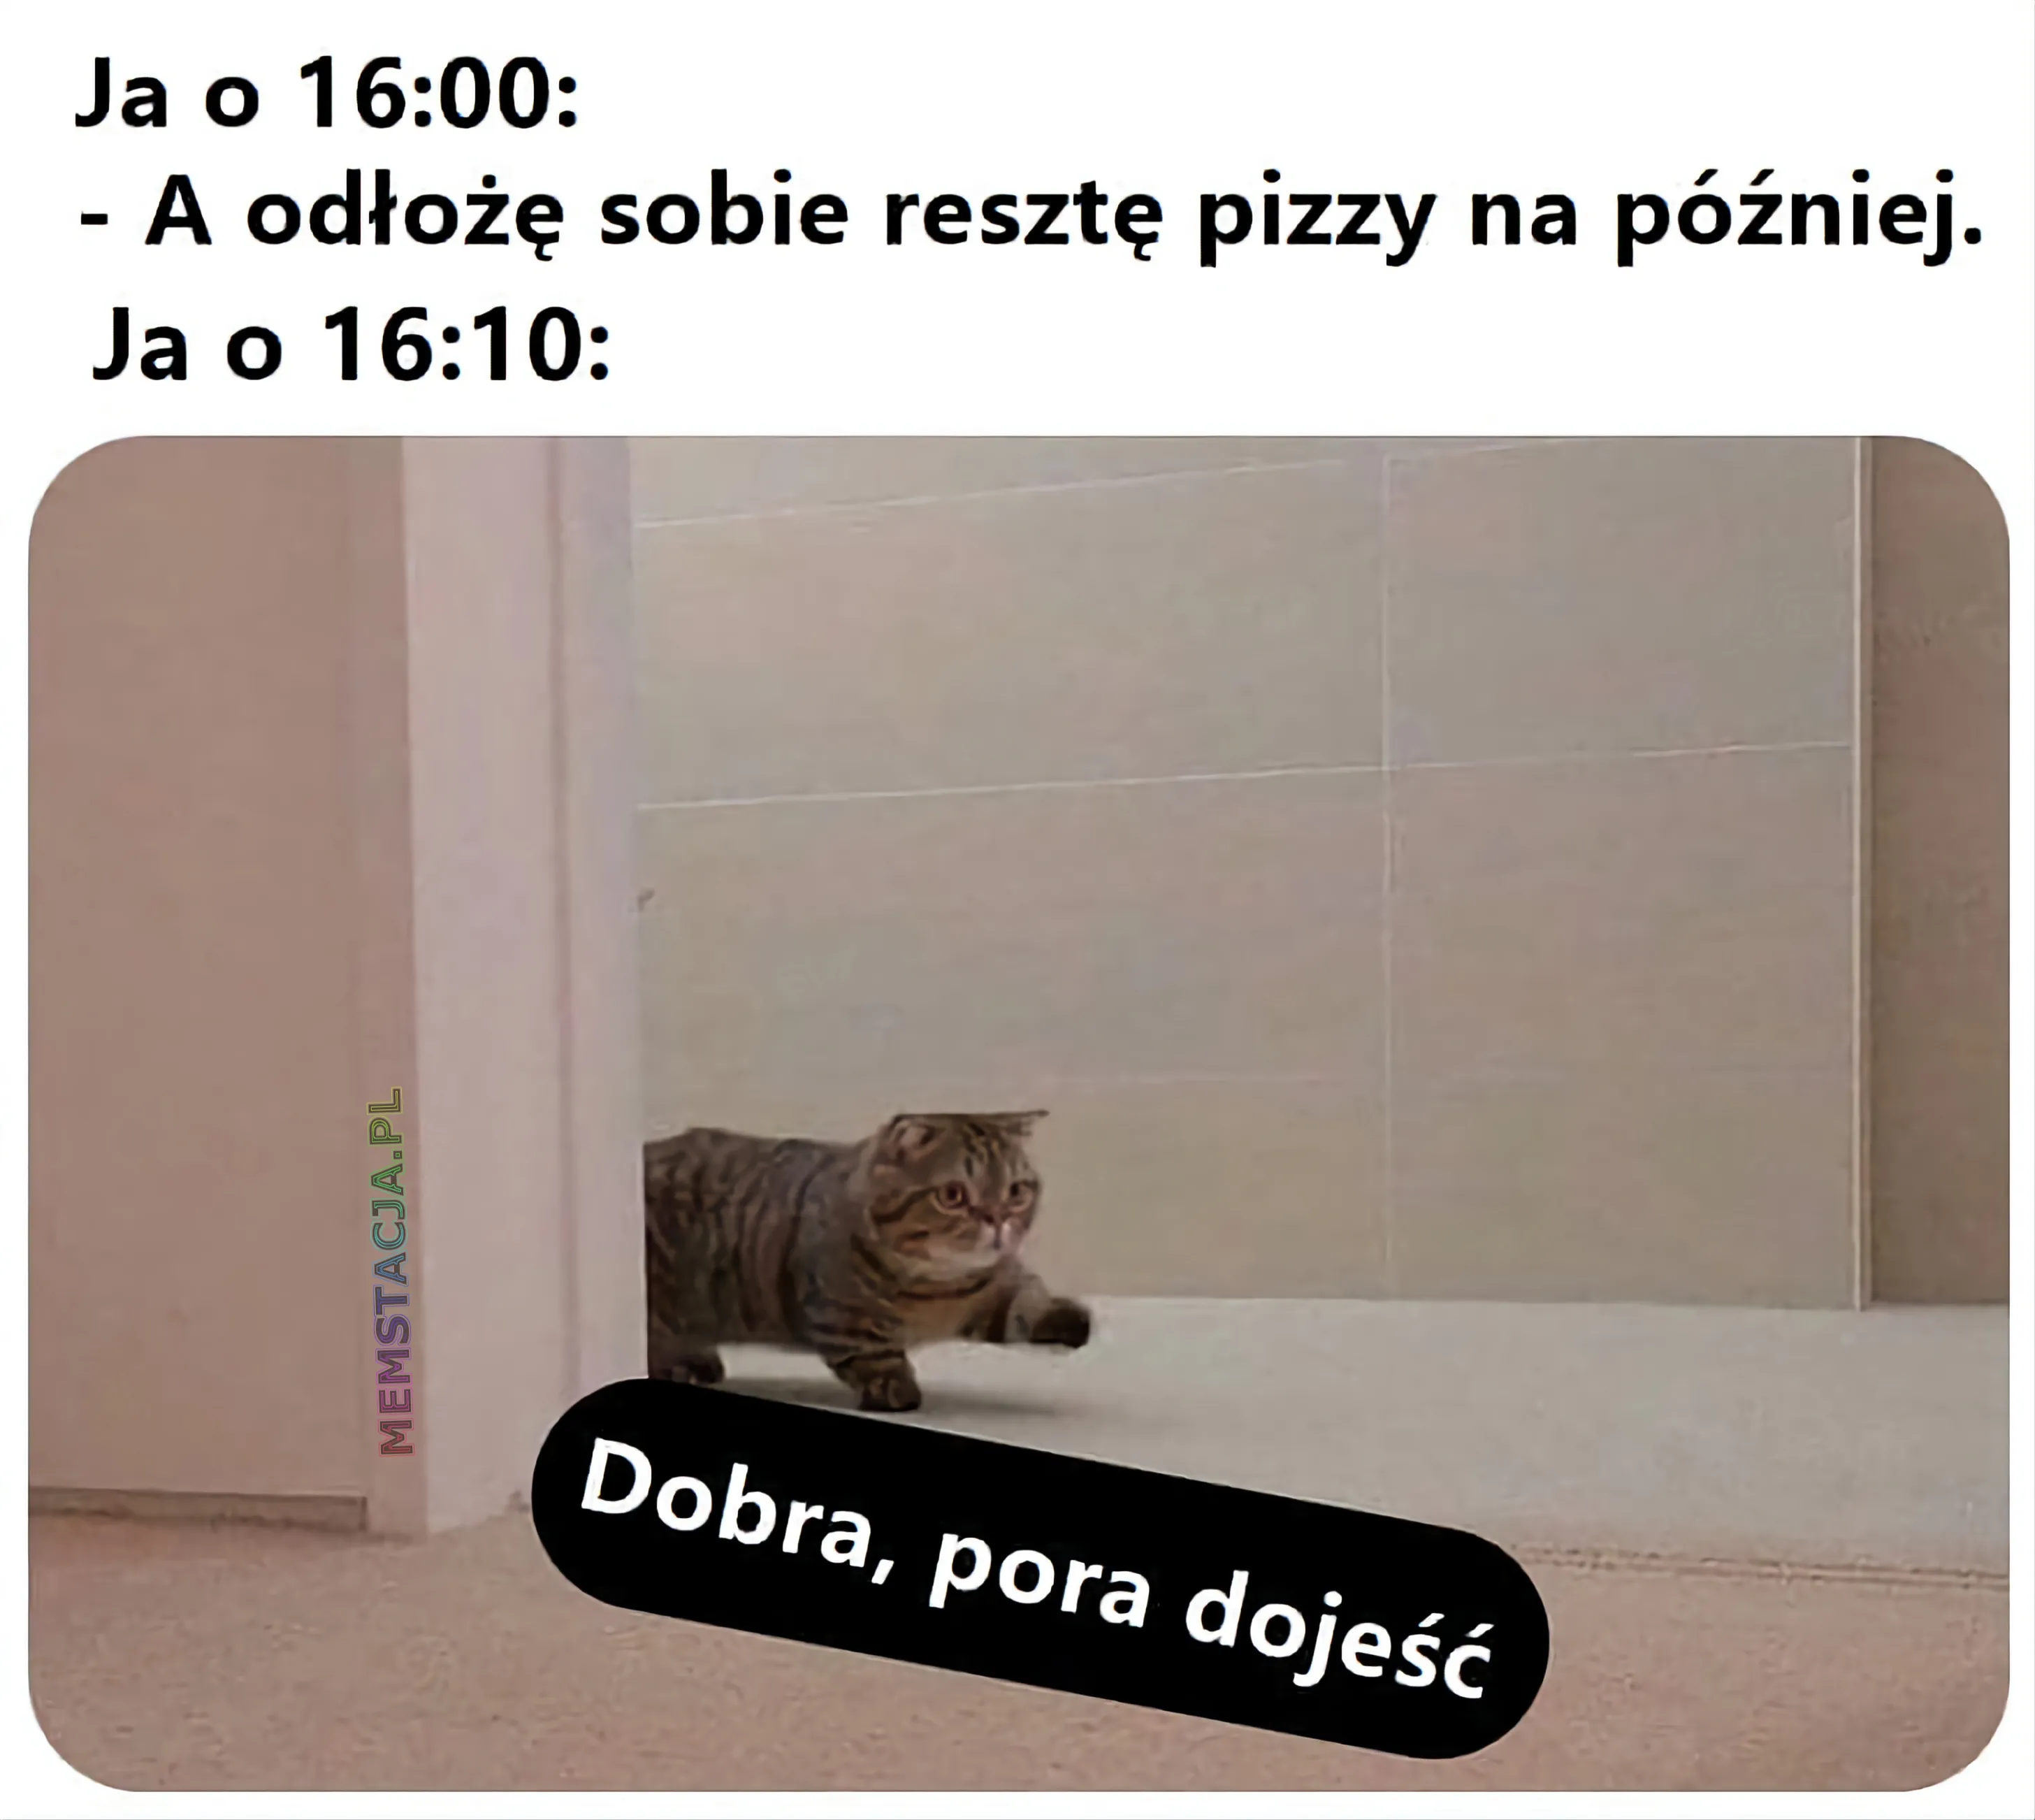 Obrazek przedstawiający idącego kotka: 'Ja o 16:00 - A odłożę sobie resztę pizzy na później; Ja o 16:10 - Dobra, pora dojeść'